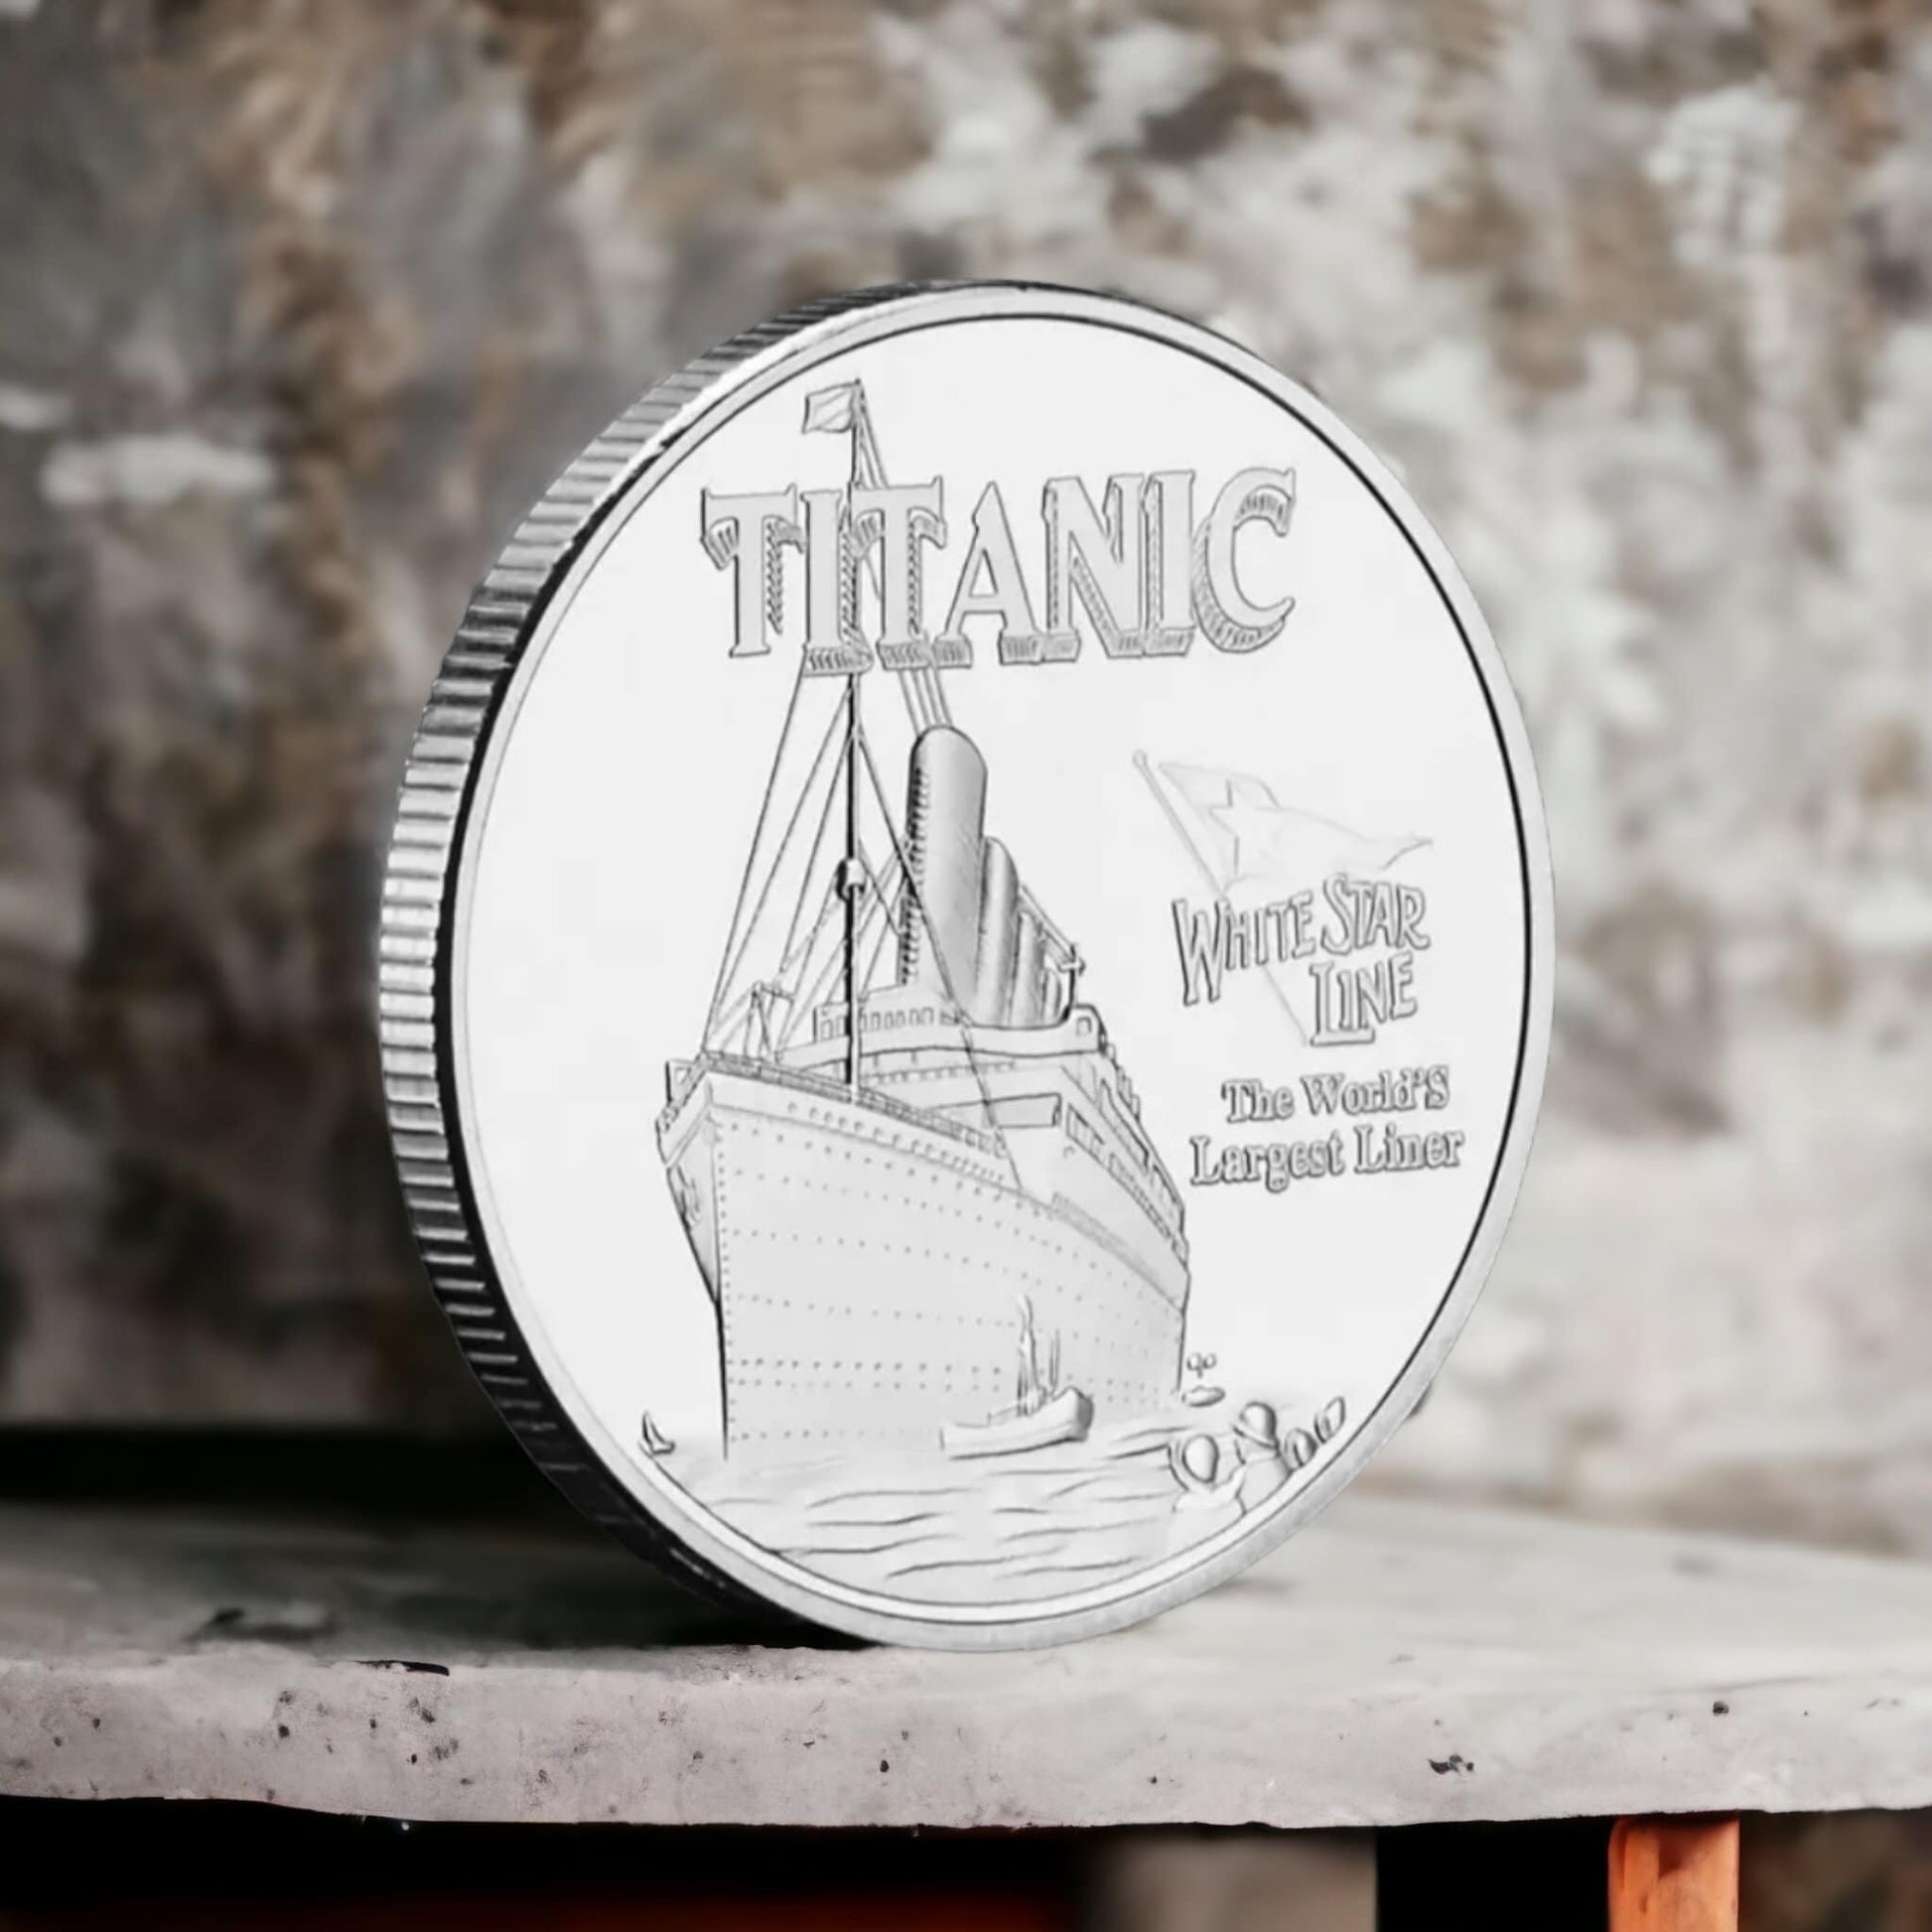 Titanic Silver Plated Coin Commemorative Souvenir White Star Line